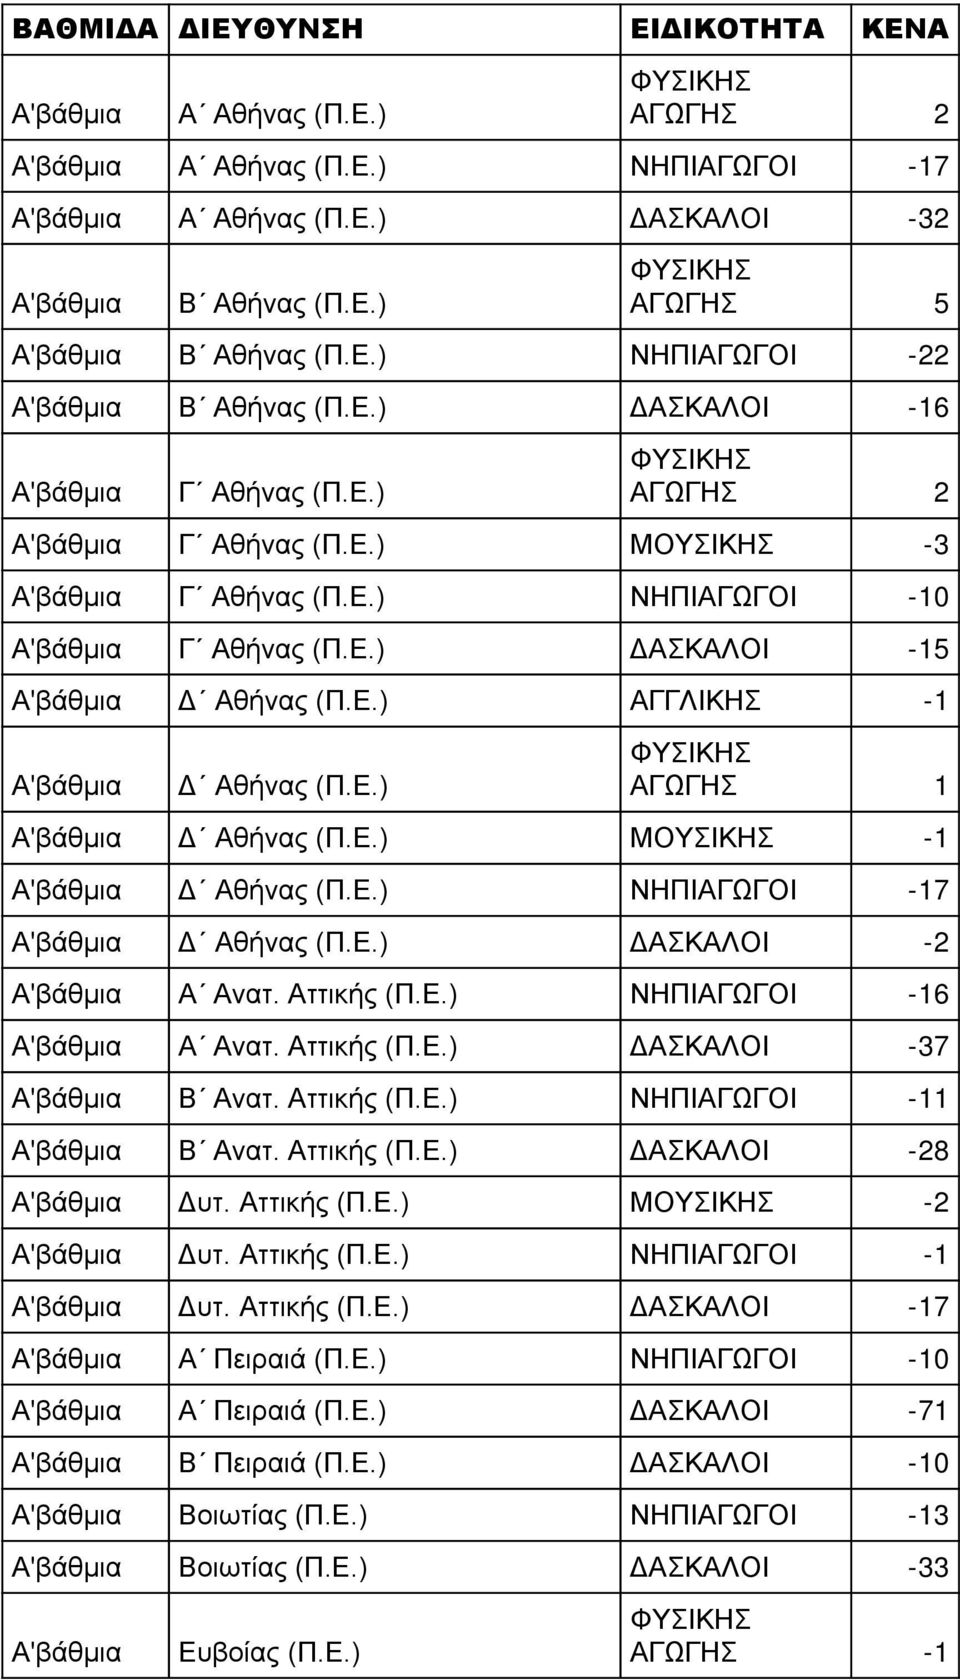 Ε.) ΔΑΣΚΑΛΟΙ -2 Α Ανατ. Αττικής (Π.Ε.) ΝΗΠΙΑΓΩΓΟΙ -16 Α Ανατ. Αττικής (Π.Ε.) ΔΑΣΚΑΛΟΙ -37 Β Ανατ. Αττικής (Π.Ε.) ΝΗΠΙΑΓΩΓΟΙ -11 Β Ανατ. Αττικής (Π.Ε.) ΔΑΣΚΑΛΟΙ -28 Δυτ. Αττικής (Π.Ε.) ΜΟΥΣΙΚΗΣ -2 Δυτ.